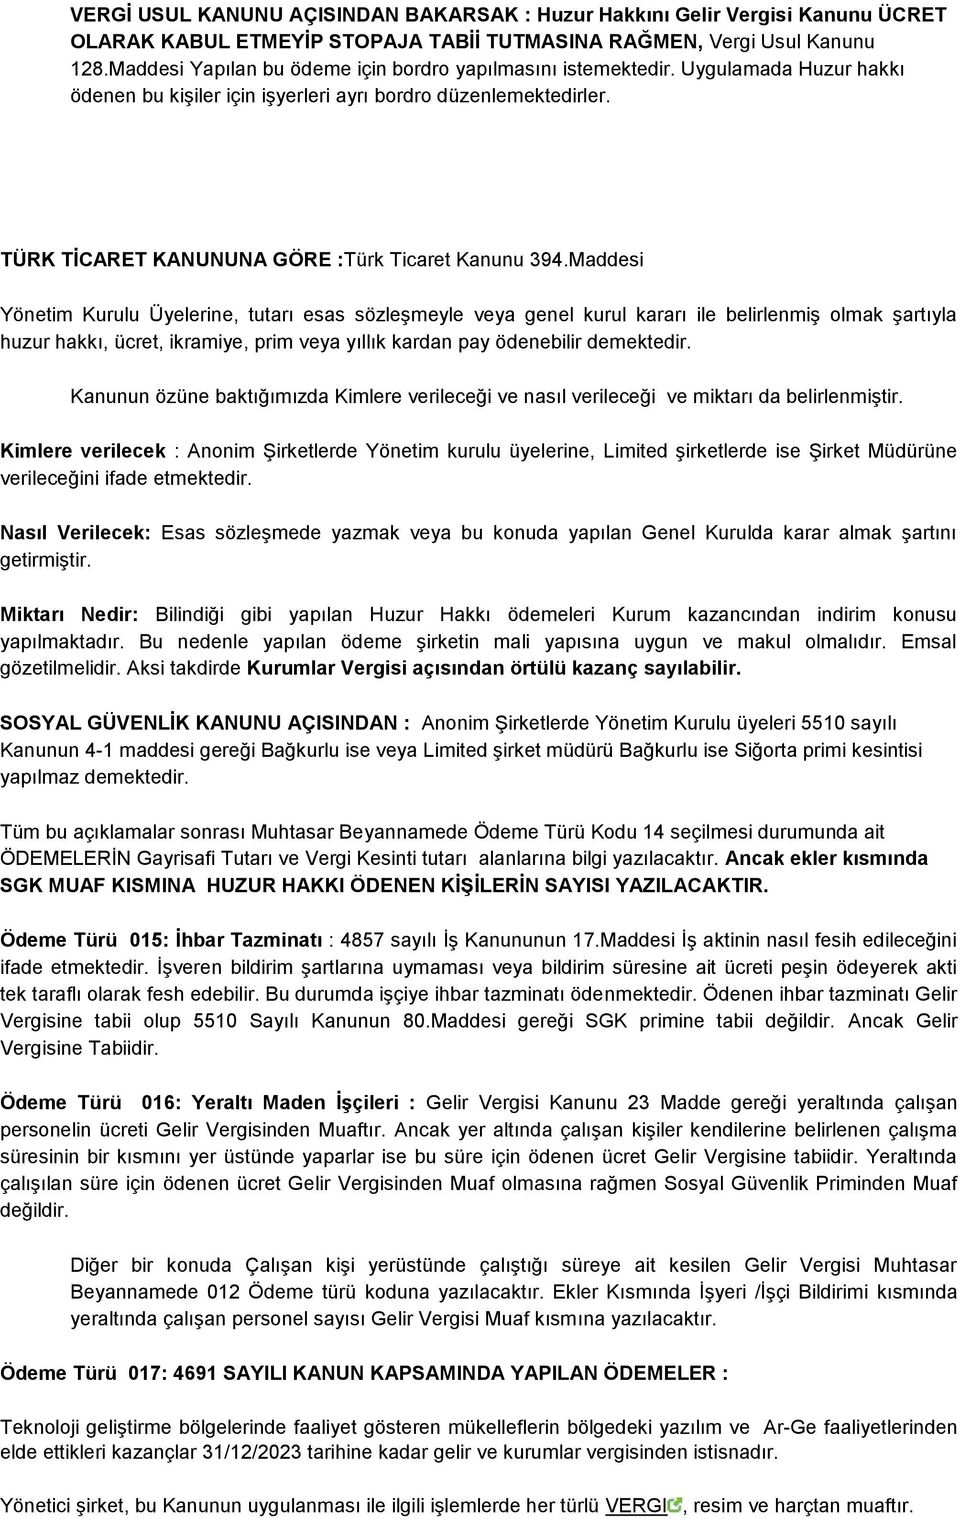 TÜRK TİCARET KANUNUNA GÖRE :Türk Ticaret Kanunu 394.